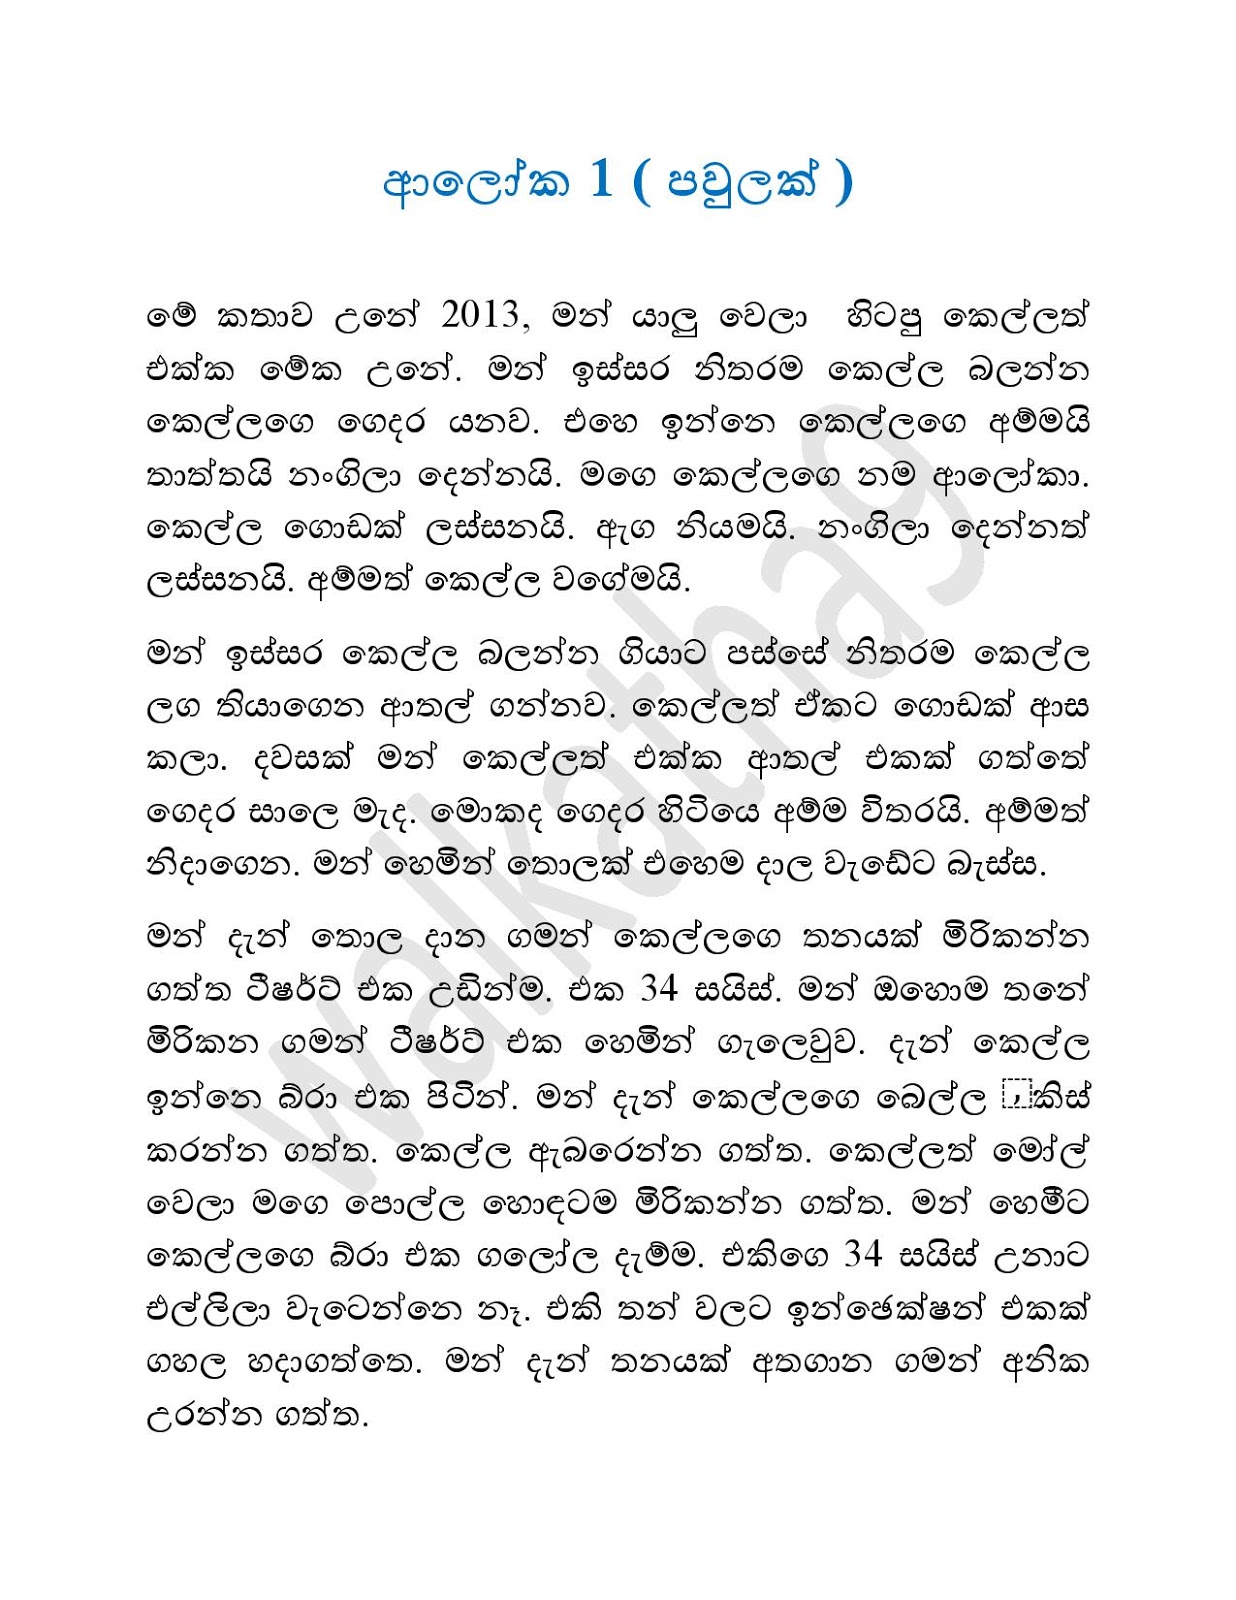 Wisekariyo 9 Aluth Wal Katha Sinhalen Sinhala Wal Katha Images And